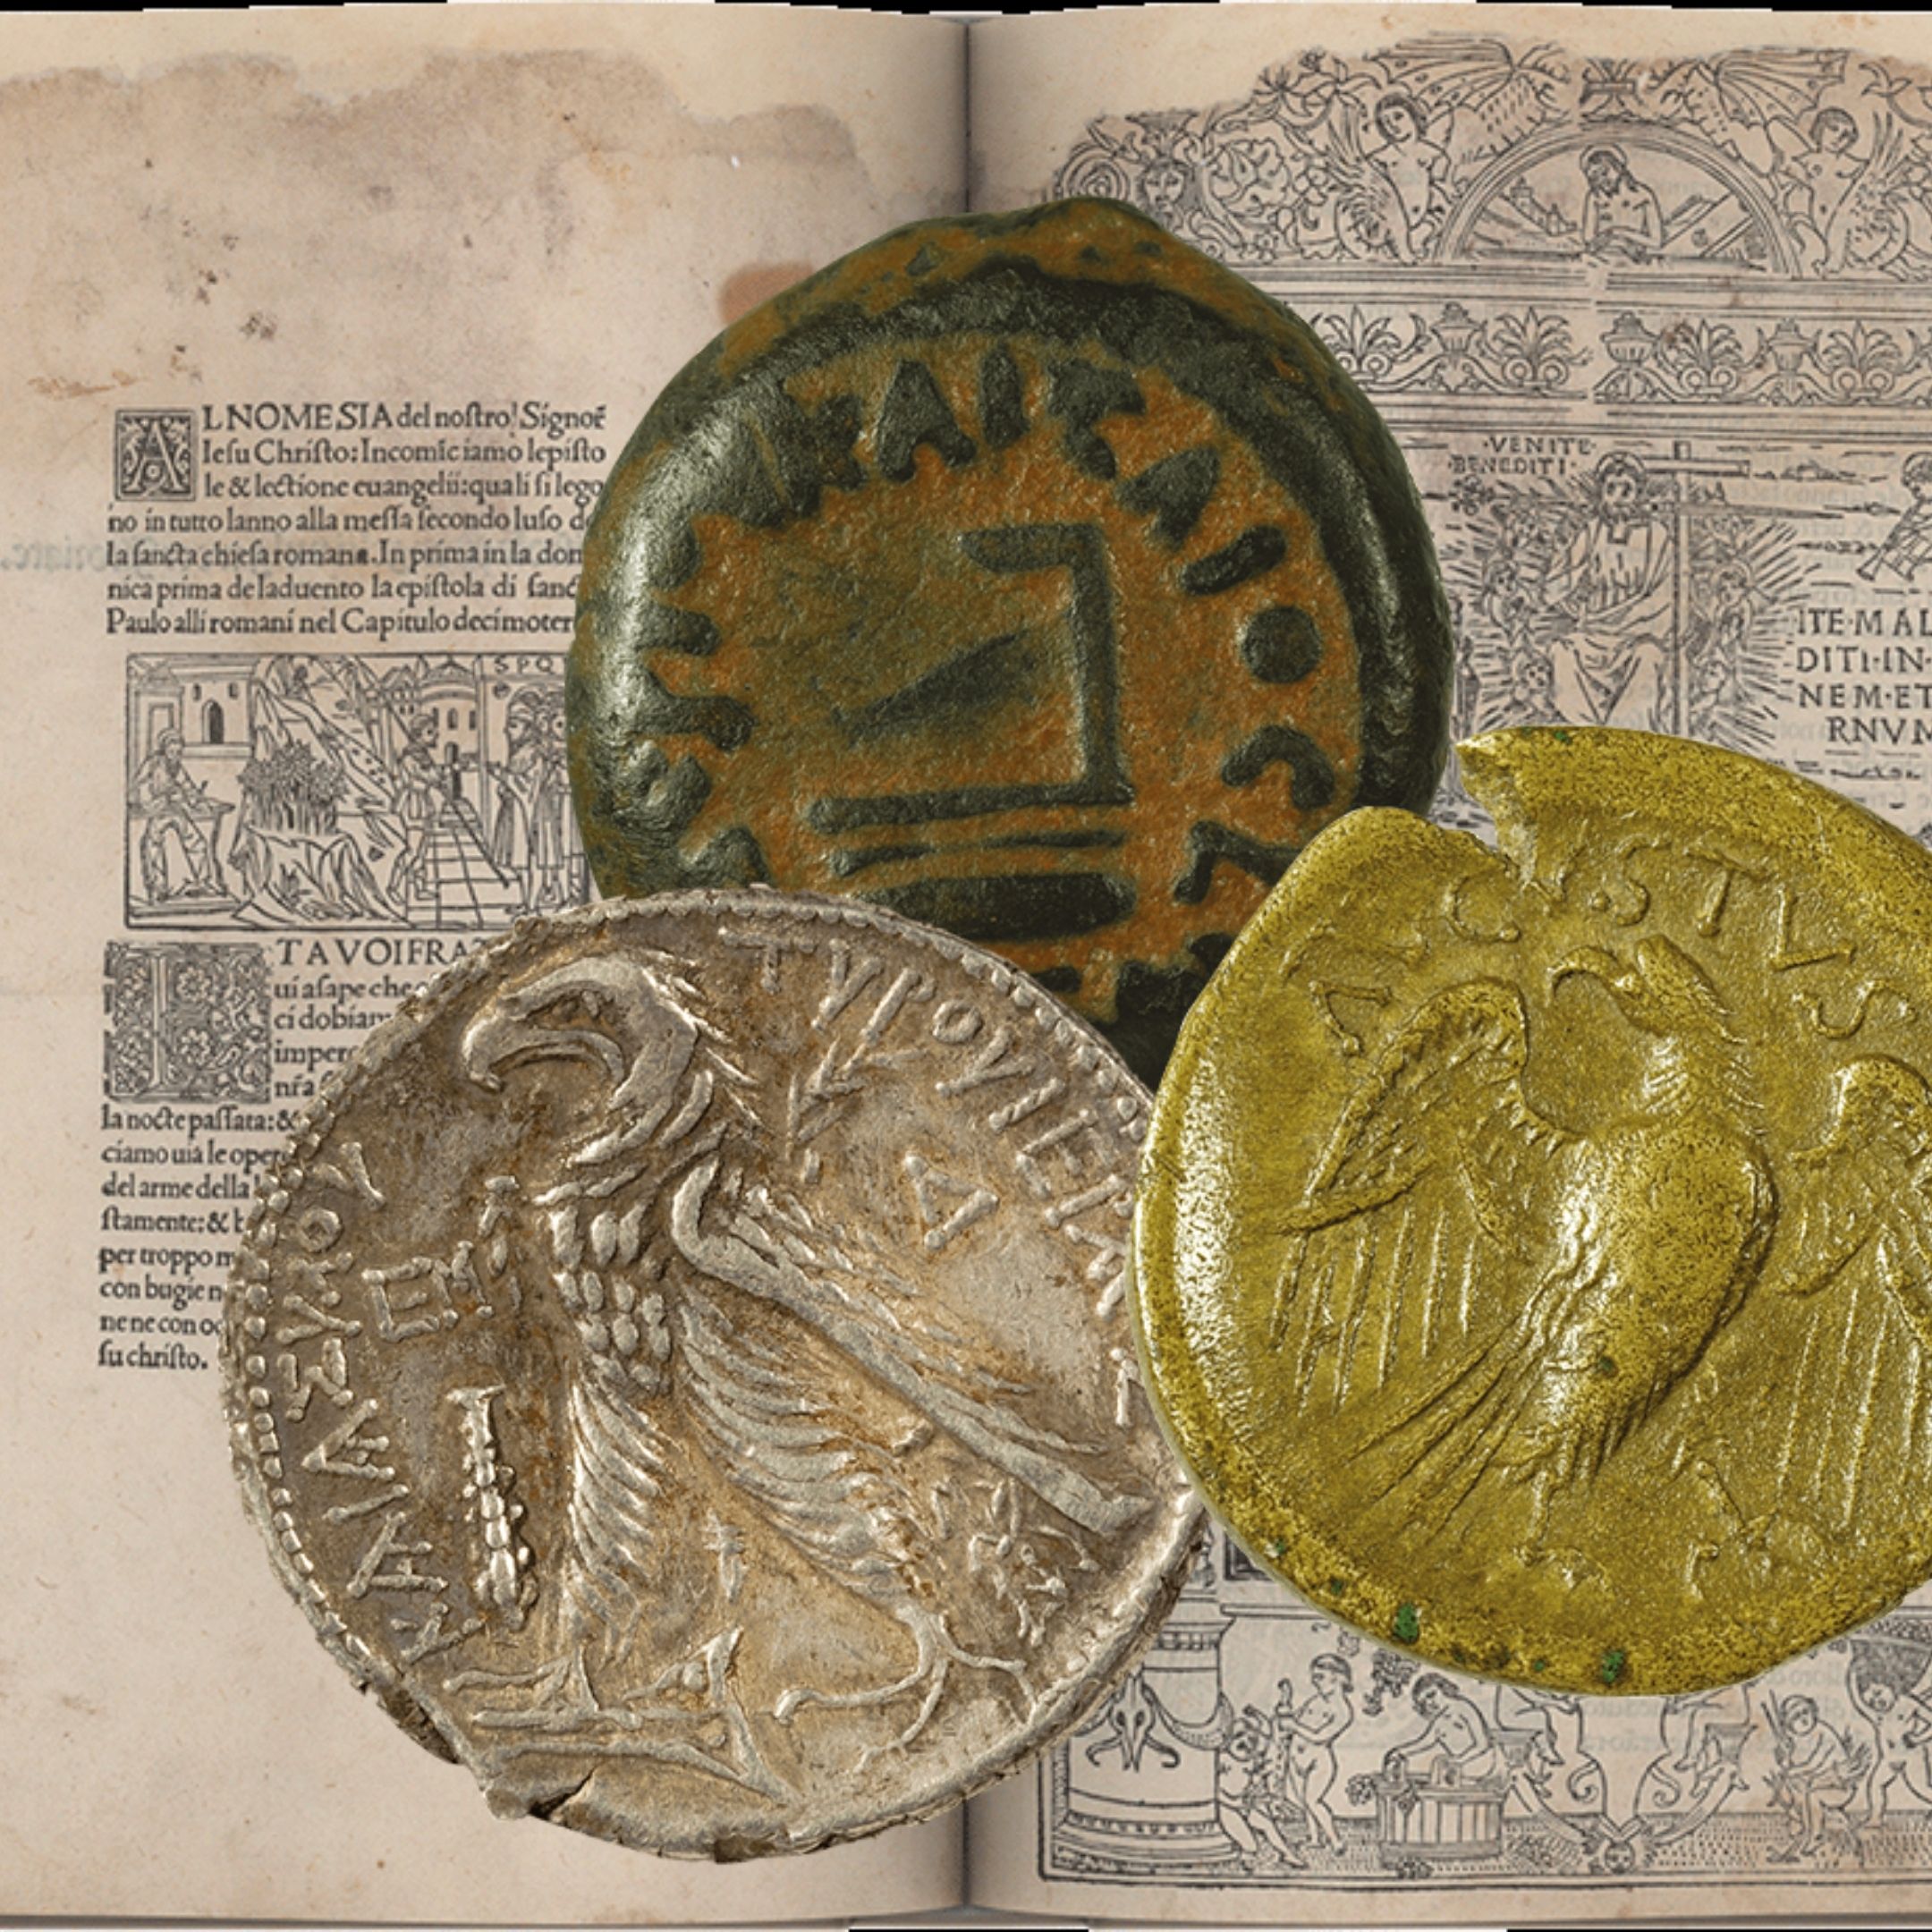 Una riedizione d’eccellenza con la riproduzione di 7 monete dei tempi di Gesù incastonate in copertina